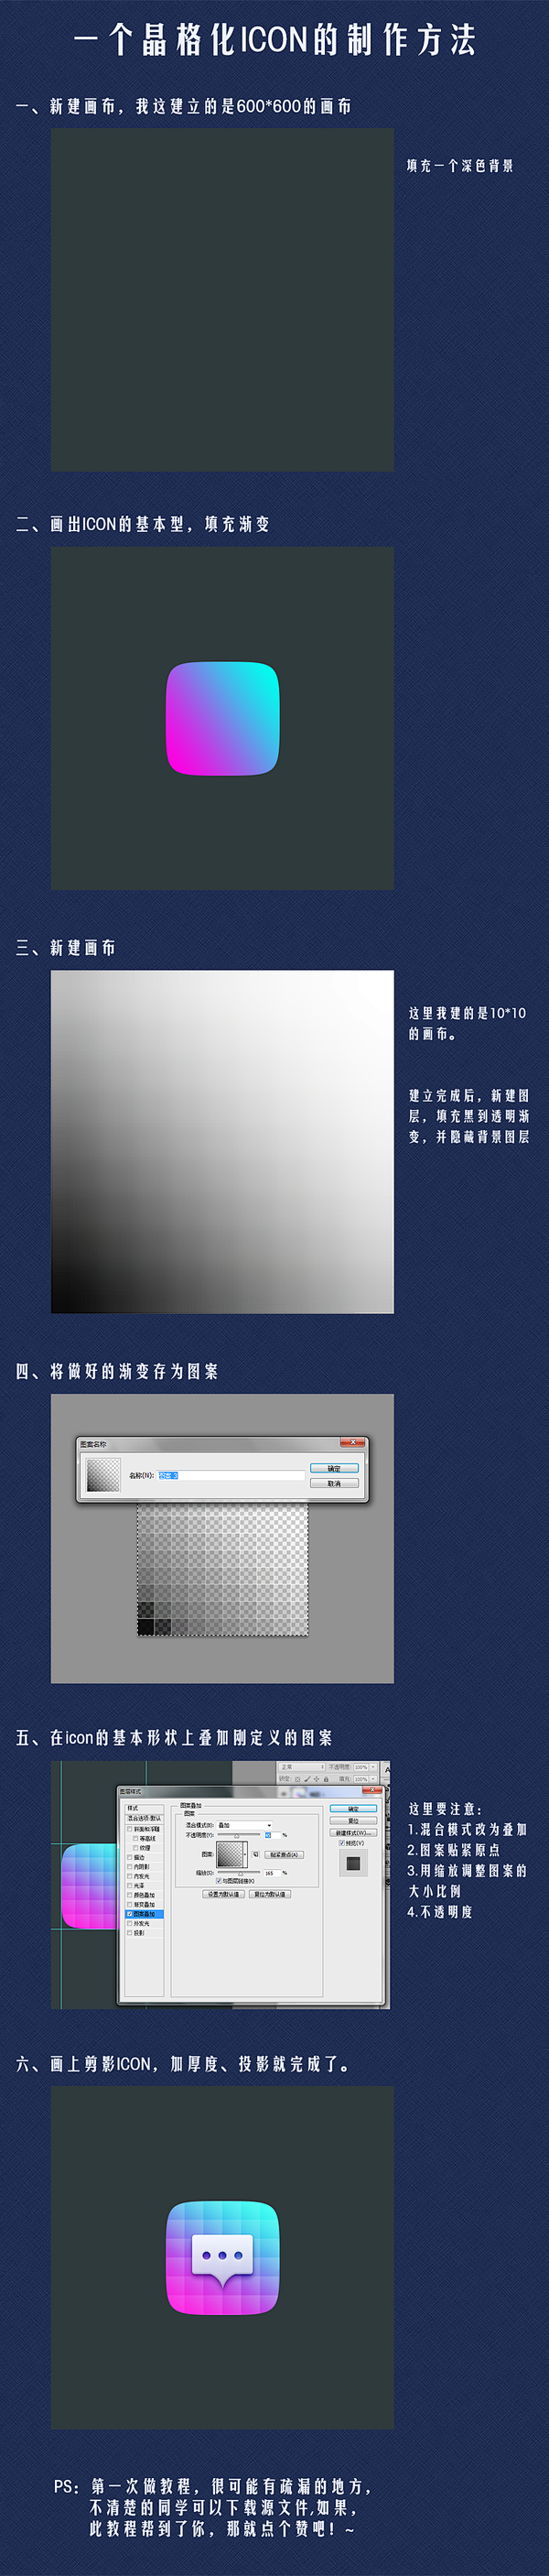 晶格化ICON的制作方法-UI中国-专业...